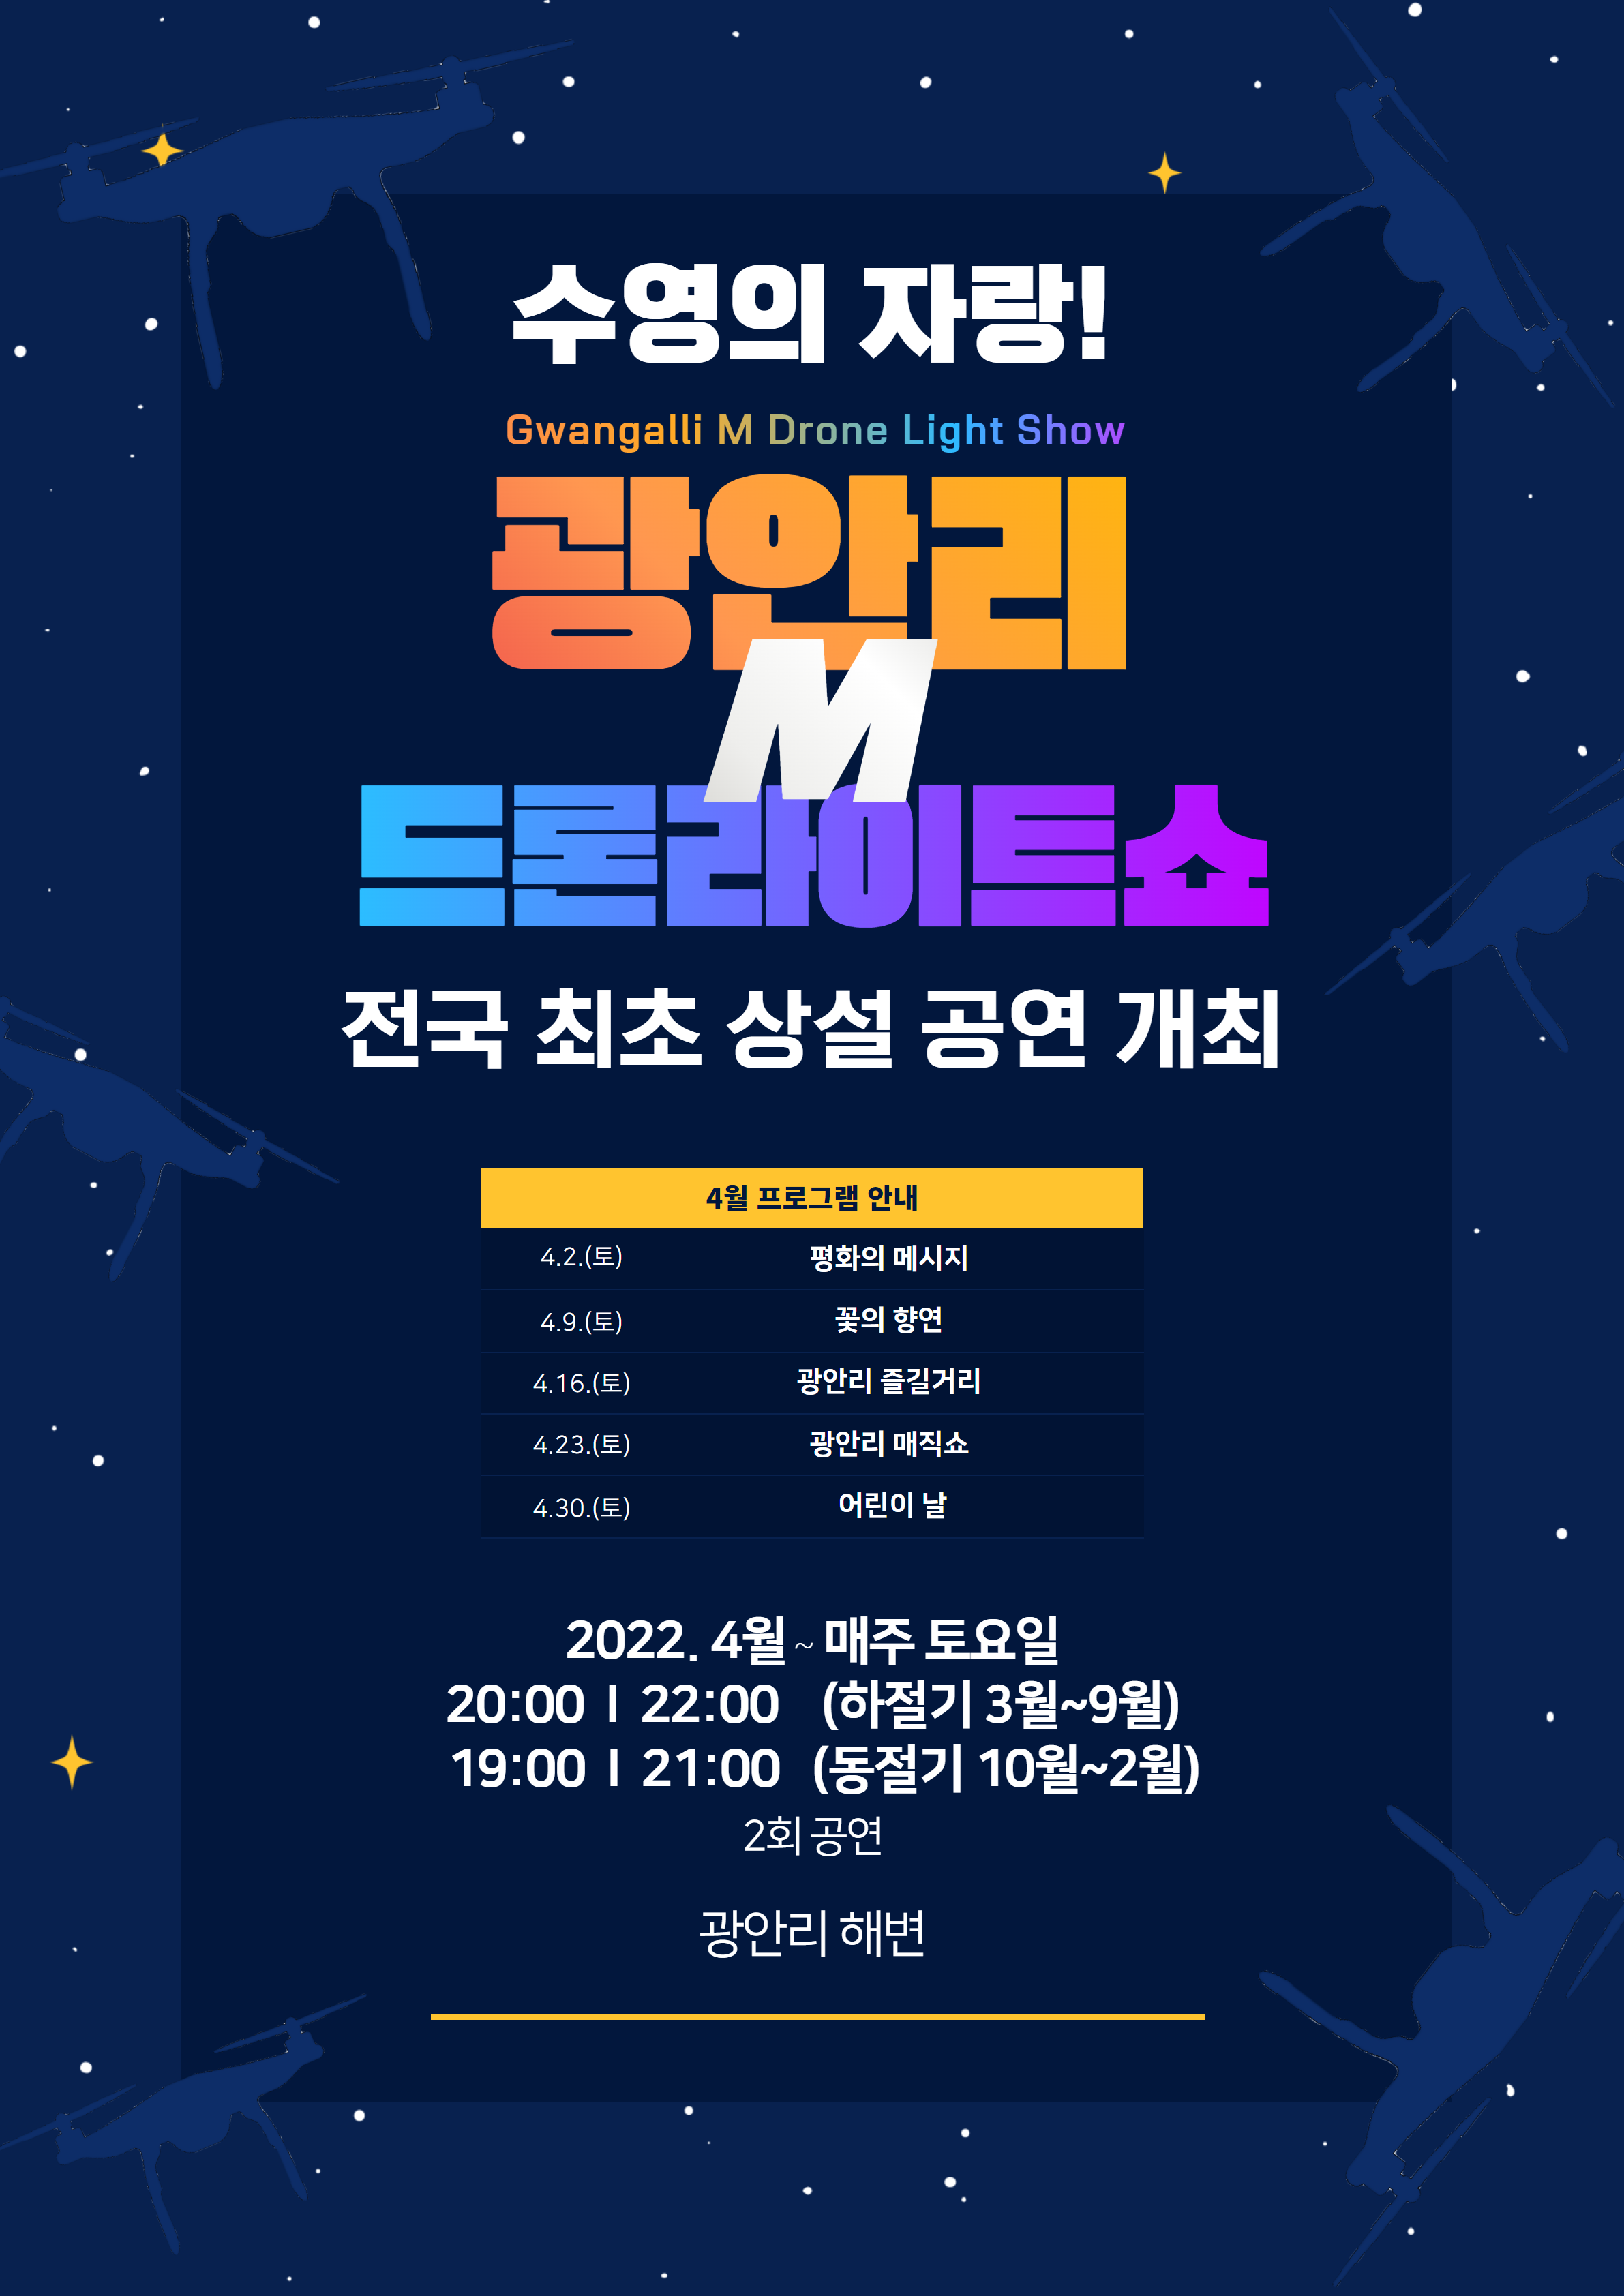 「2022 광안리 M 드론 라이트쇼」상설 공연 개최 알림